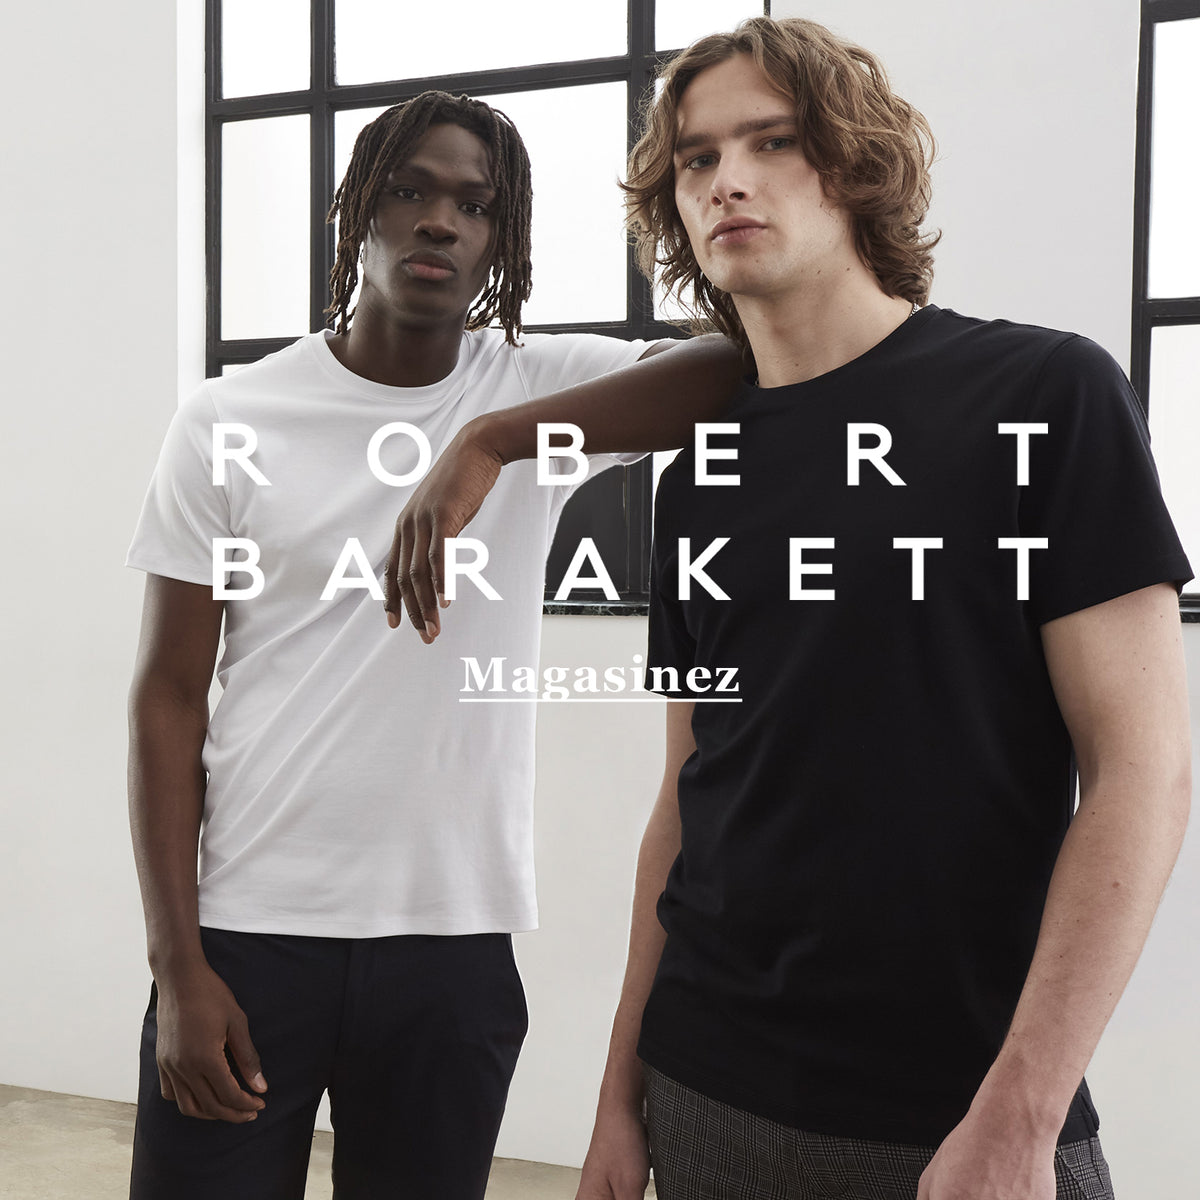 deux hommes portant des t-shirts basiques, noir et blanc, de la marque robert barakett | two men wearing basic, black and white, robert barakett t-shirts